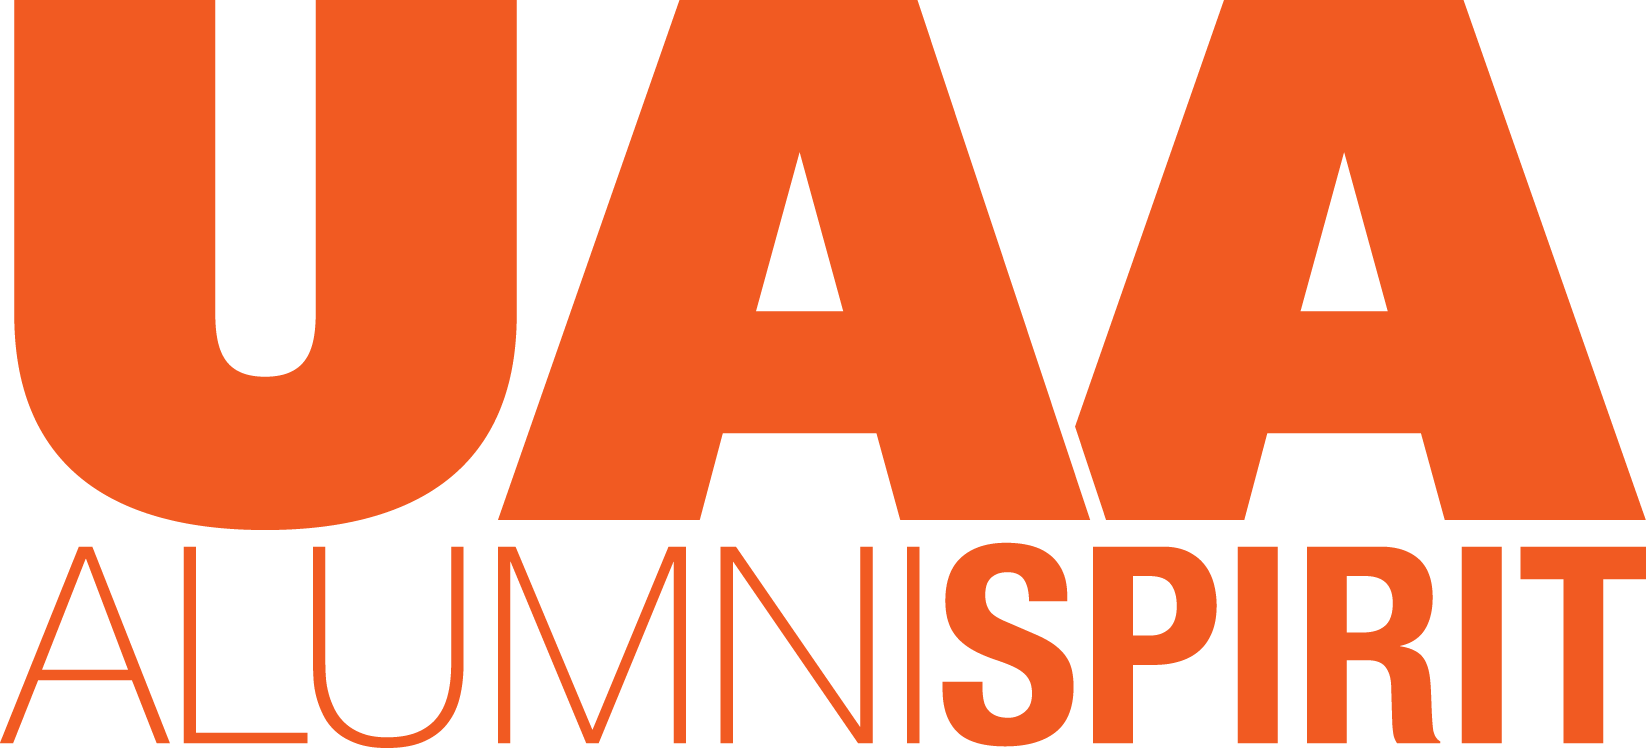 UAA Alumni Spirit logo